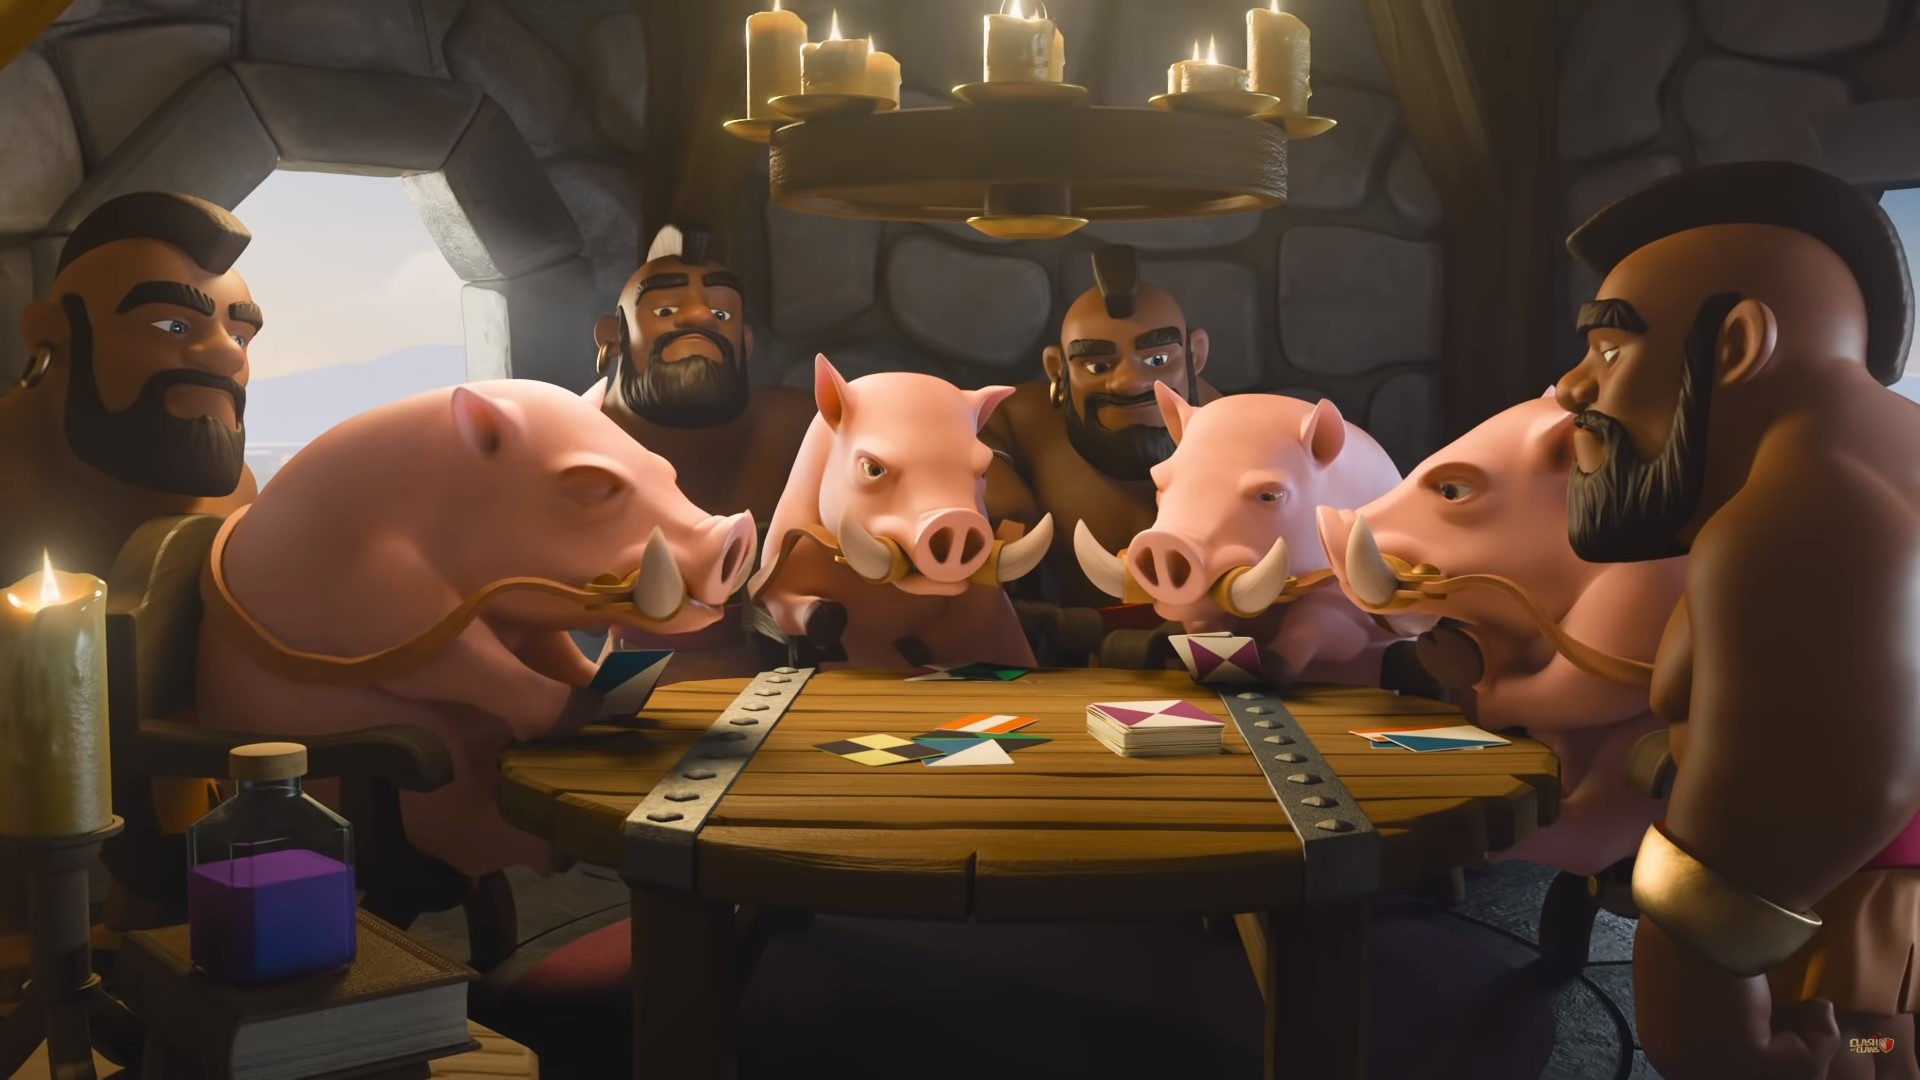 Trò chơi chiến lược di động tốt nhất: Clash of Clans. Hình ảnh cho thấy một loạt người và lợn ngồi quanh bàn